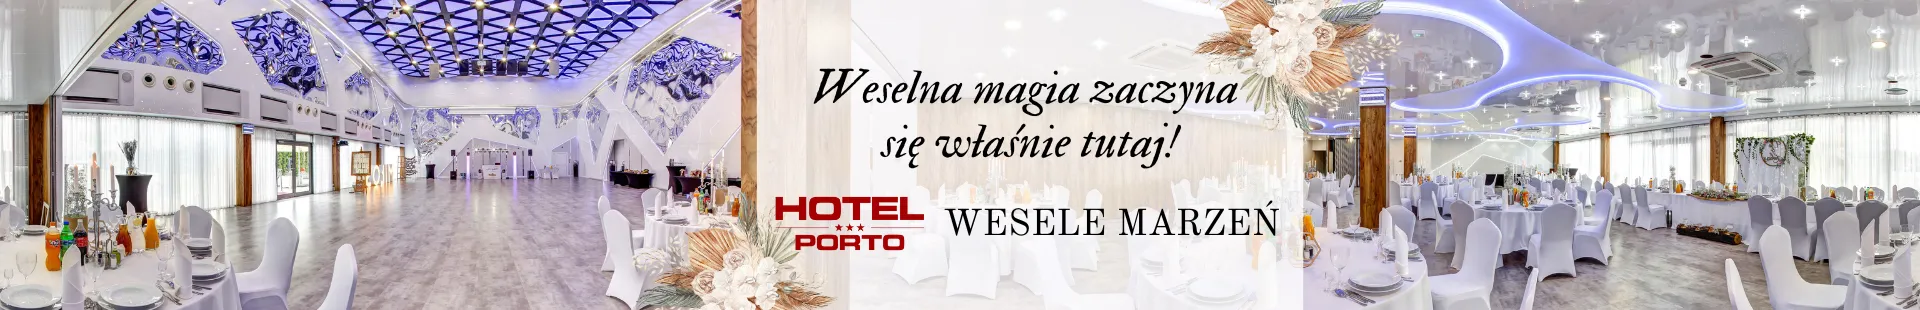 Zamki na wesele wedding.pl